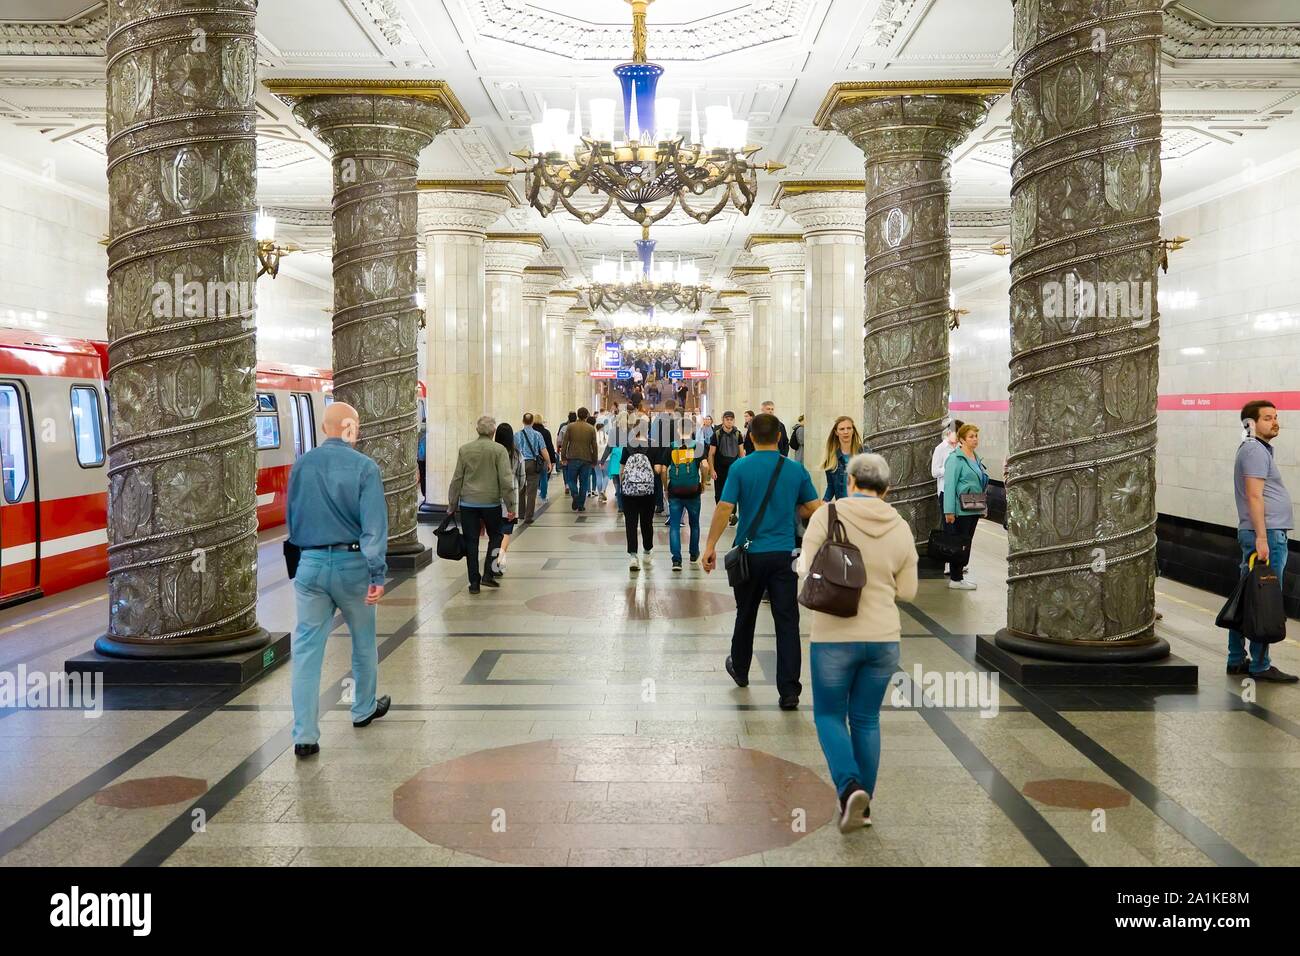 Saint-pétersbourg, Russie - 8 juillet 2019 : Les gens de la station de métro Avtovo Banque D'Images